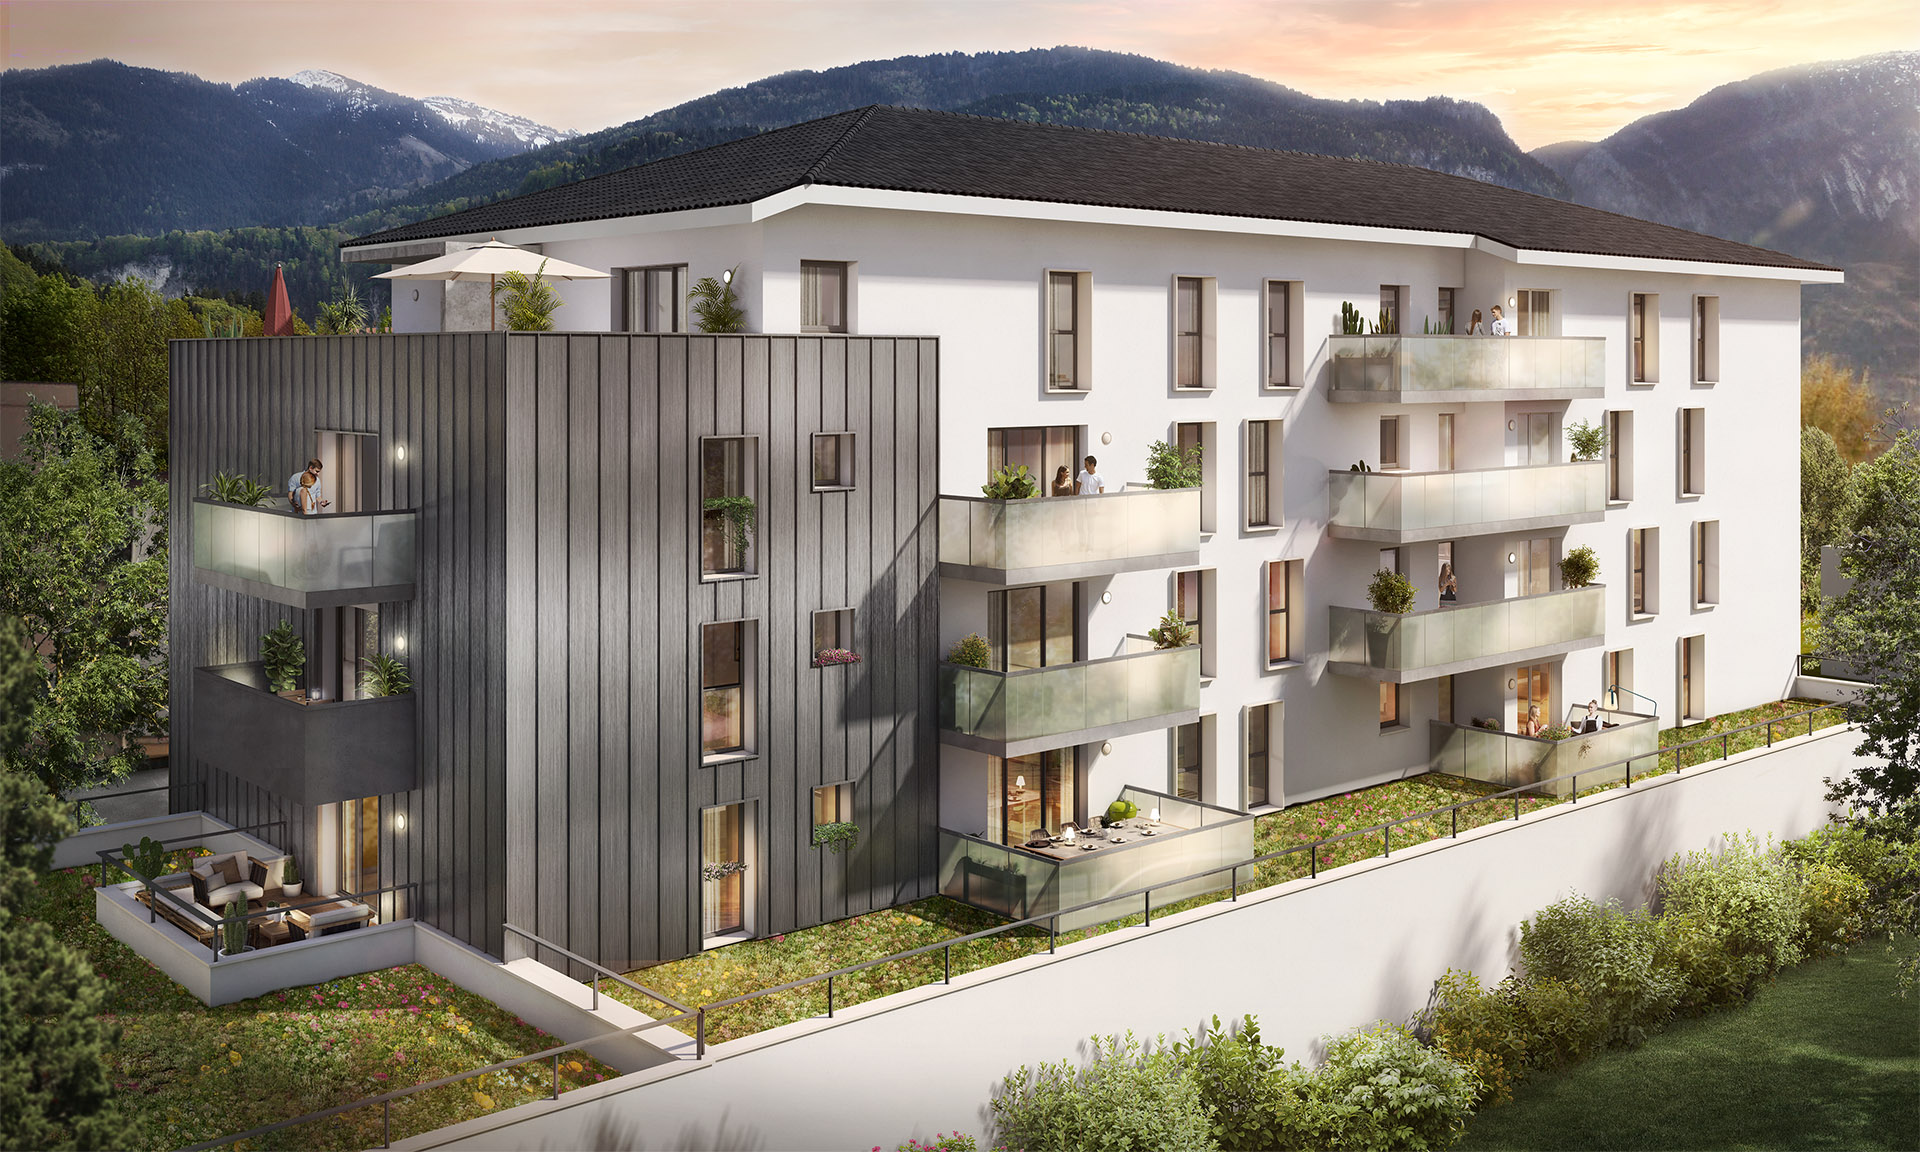 residence neuve haute savoie-logements neufs cluses proche suisse-acheter ou investir les horlogers